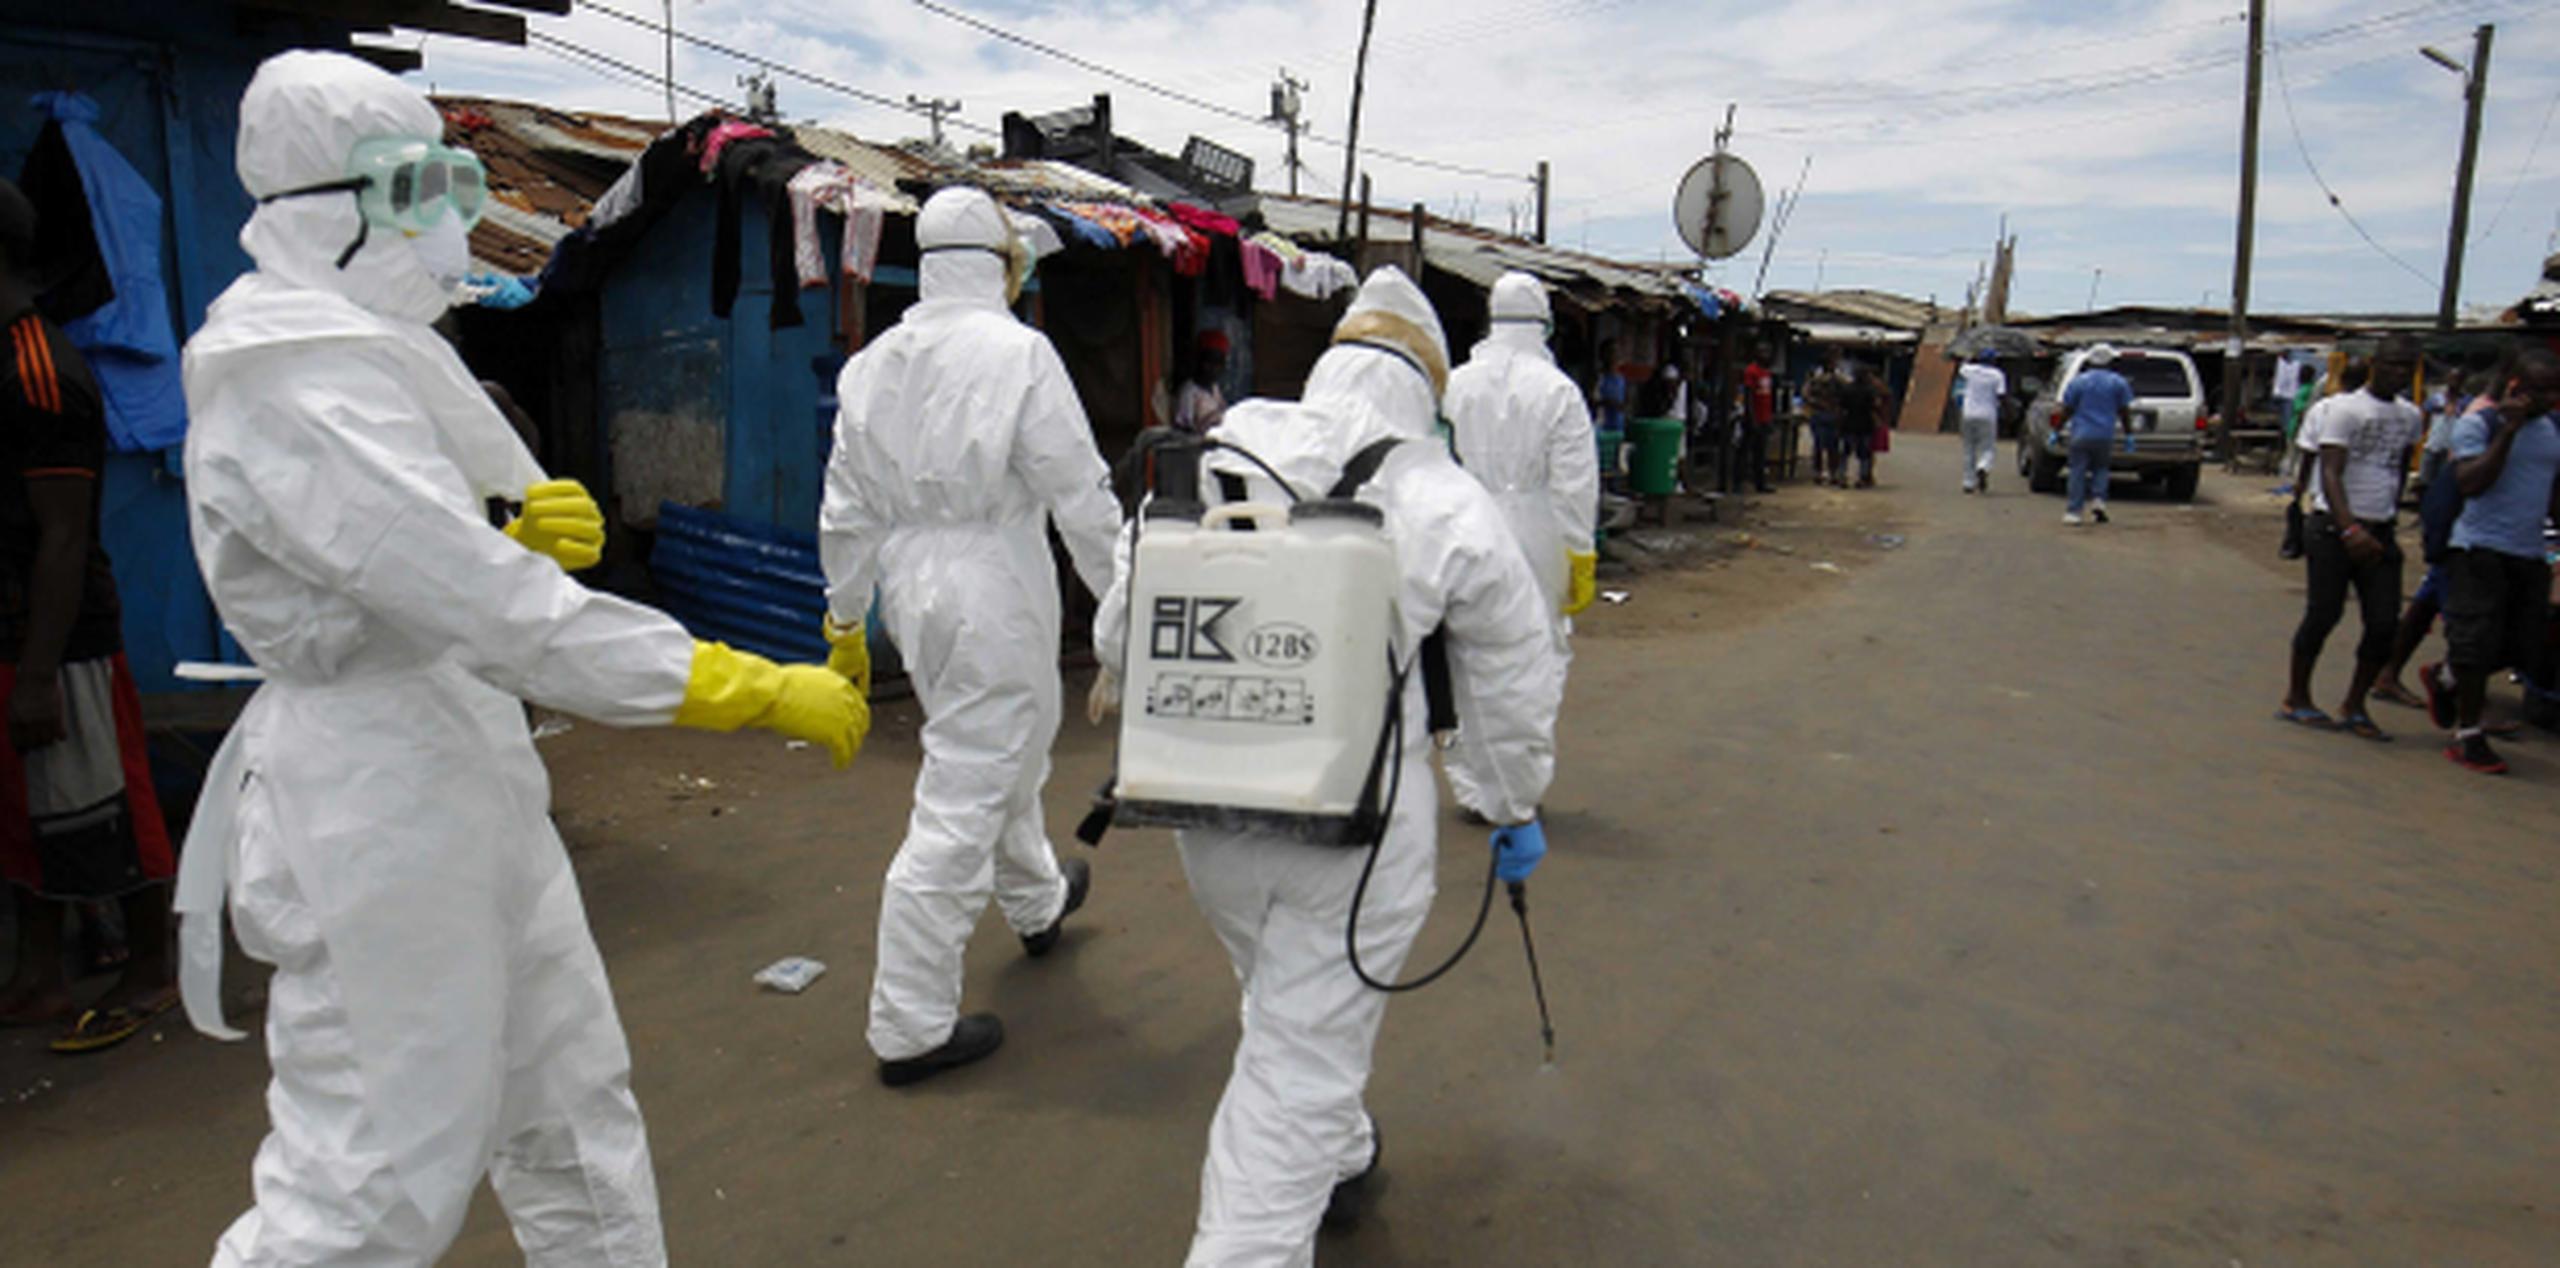 Miembros de la sanidad se disponen a desinfectar la zona donde trasladaron a un paciente que supuestamente padece ébola en la ciudad de Monrovia, Liberia. (EFE)